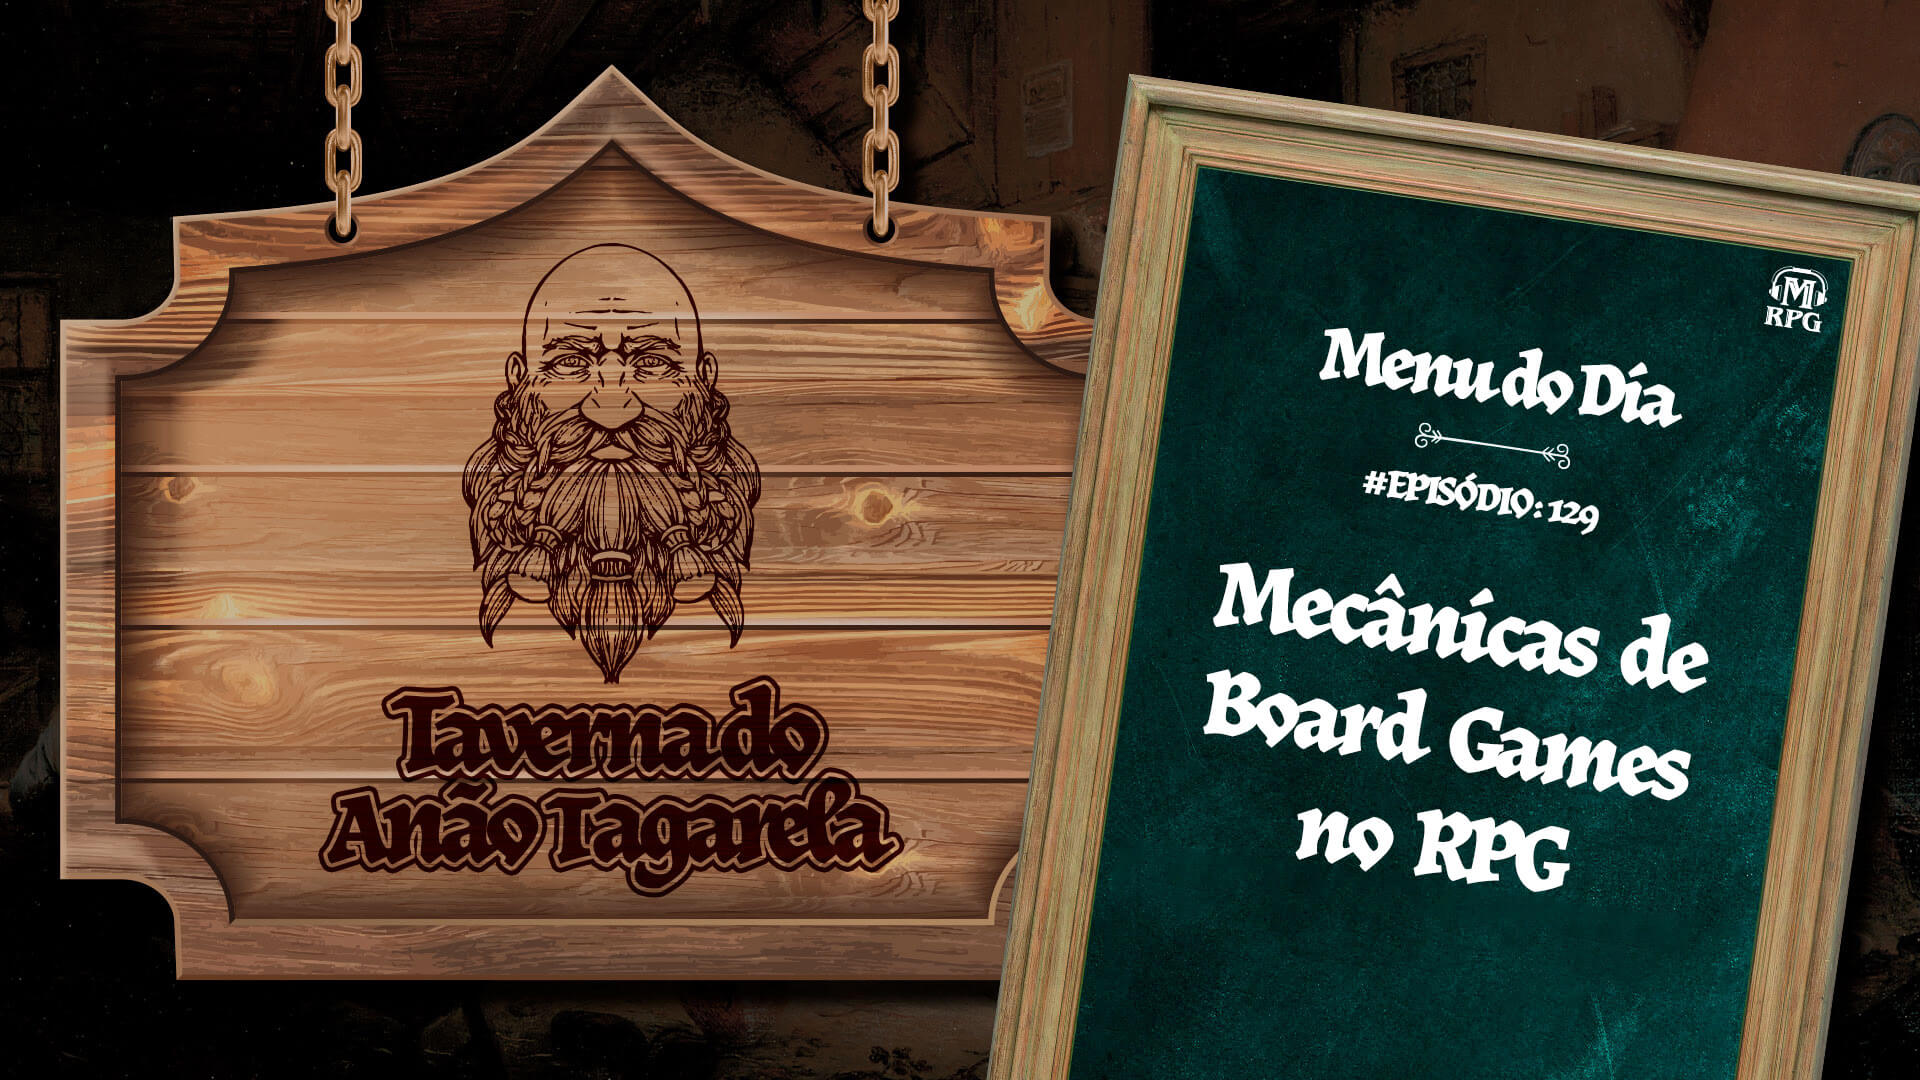 Mecânicas de Board Games no RPG – Taverna do Anão Tagarela #129